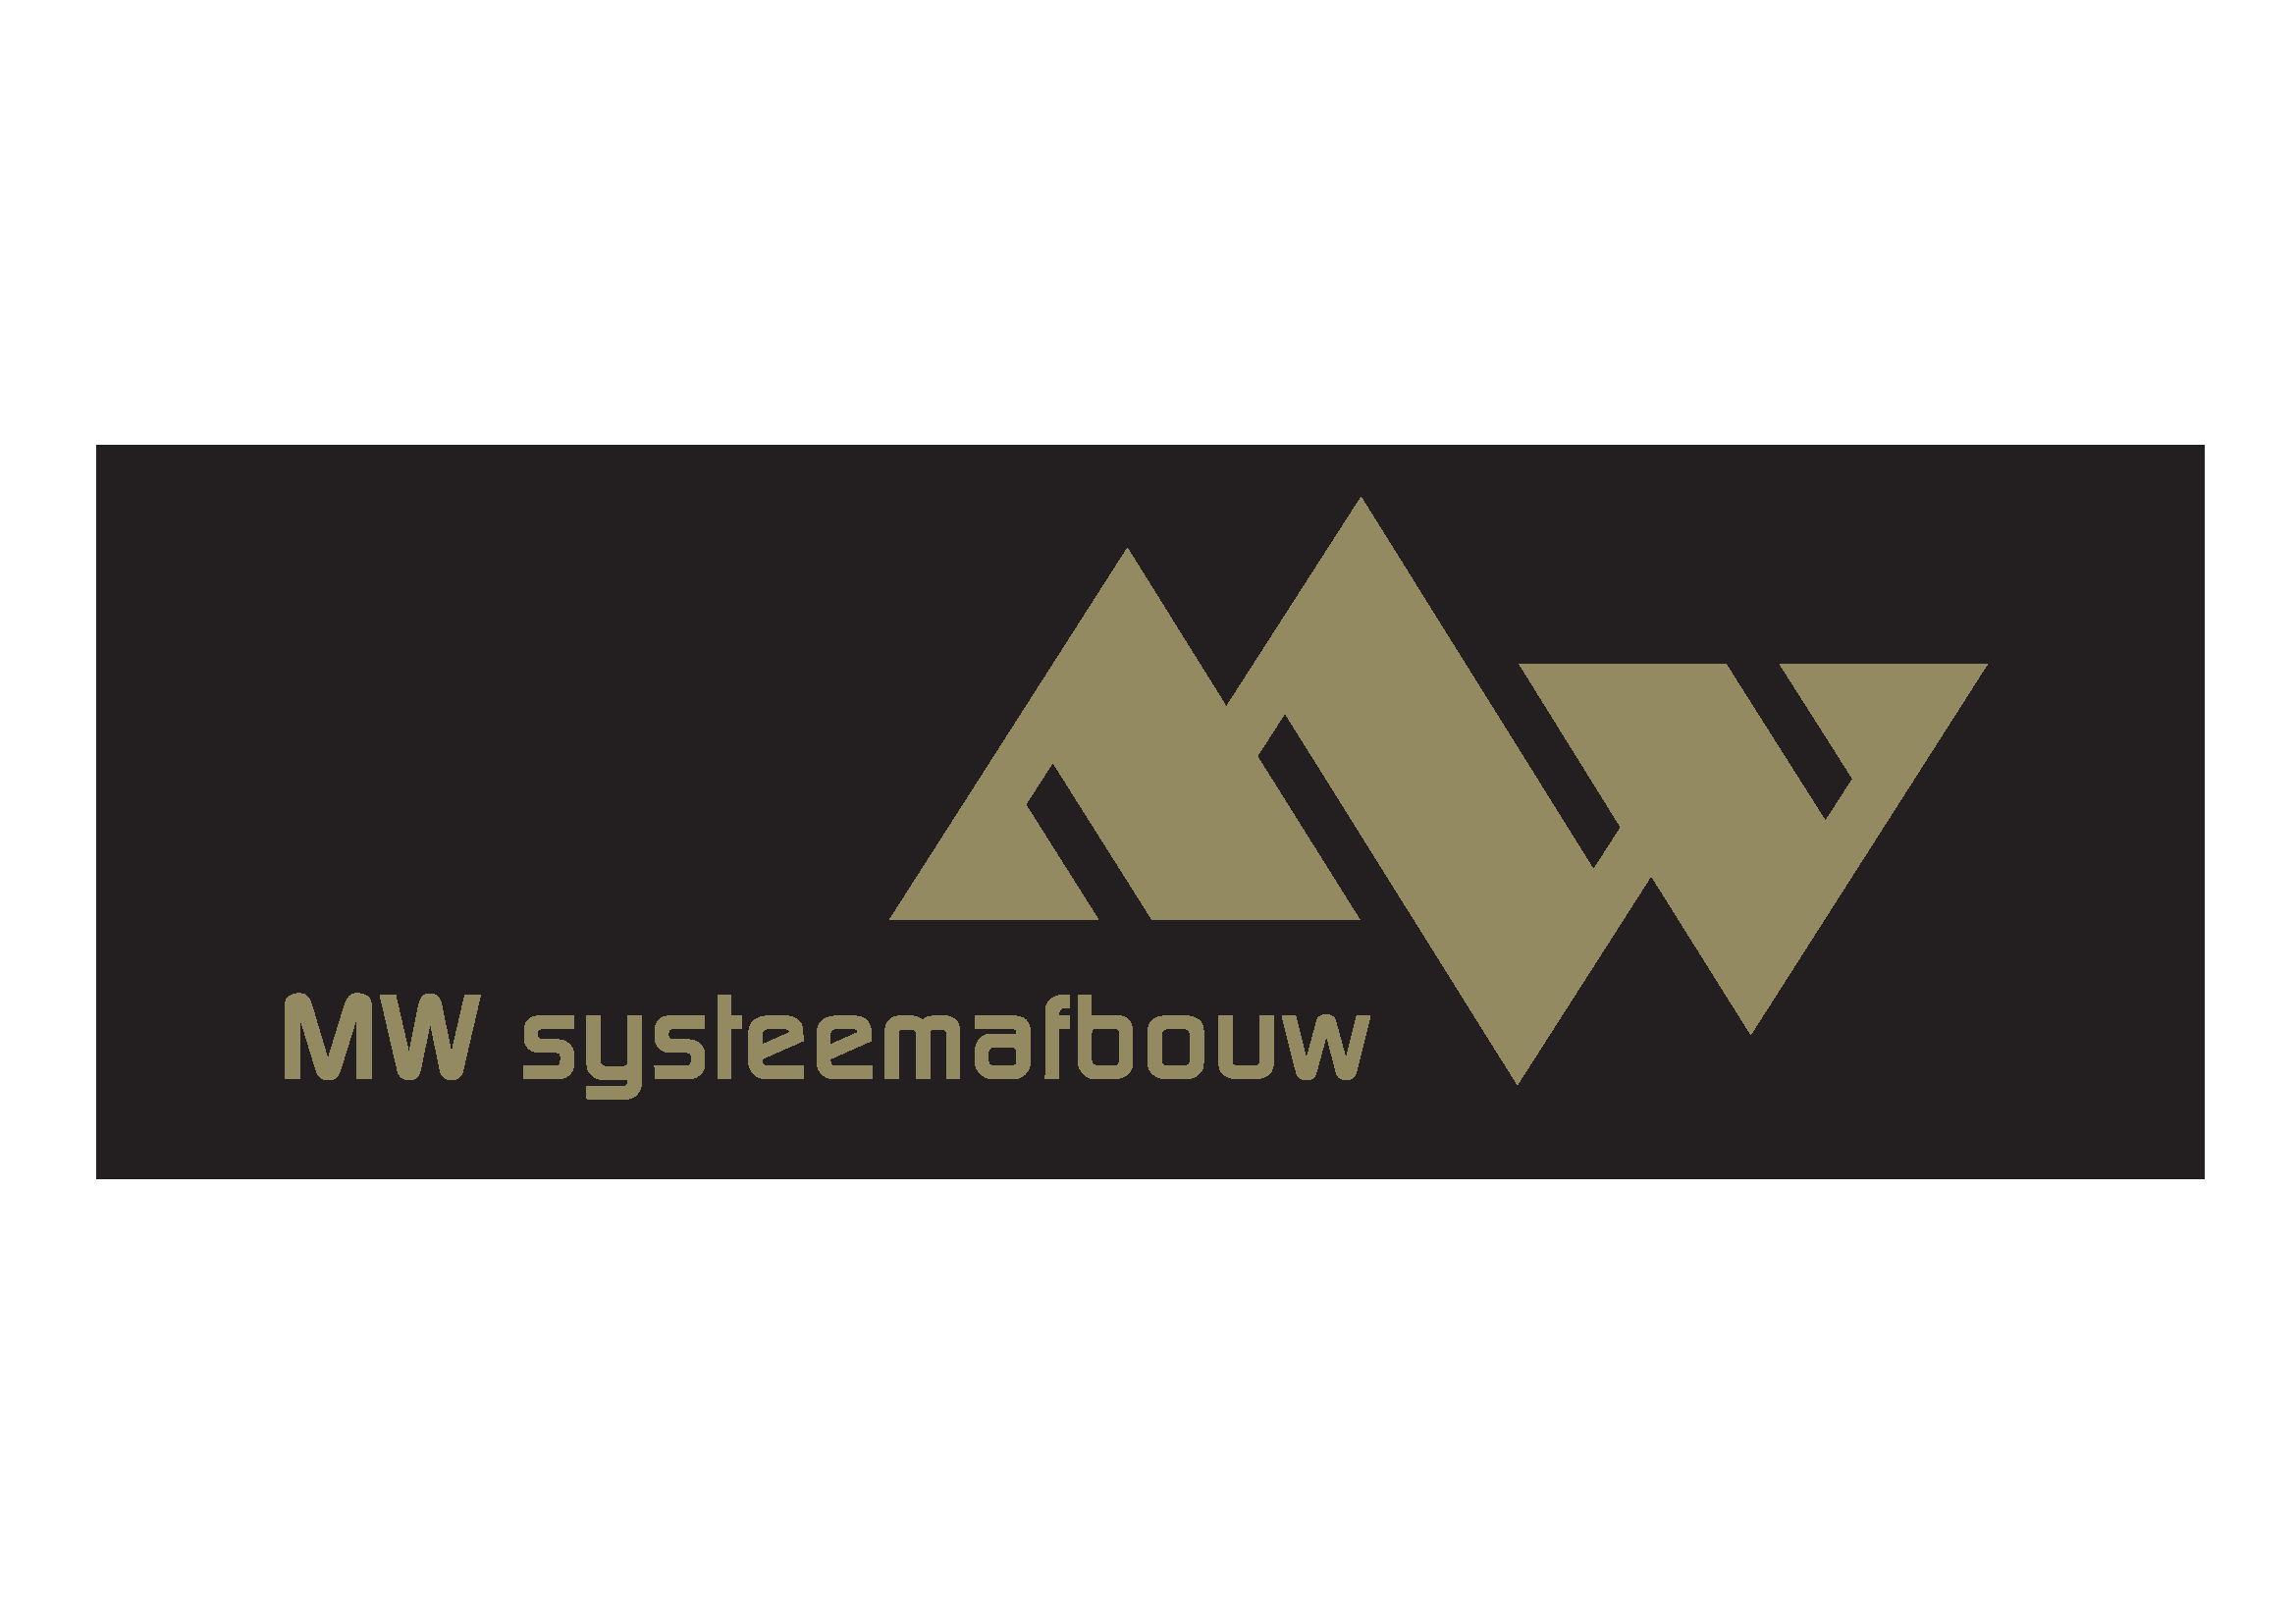 13 MW-systeemafbouw - logo